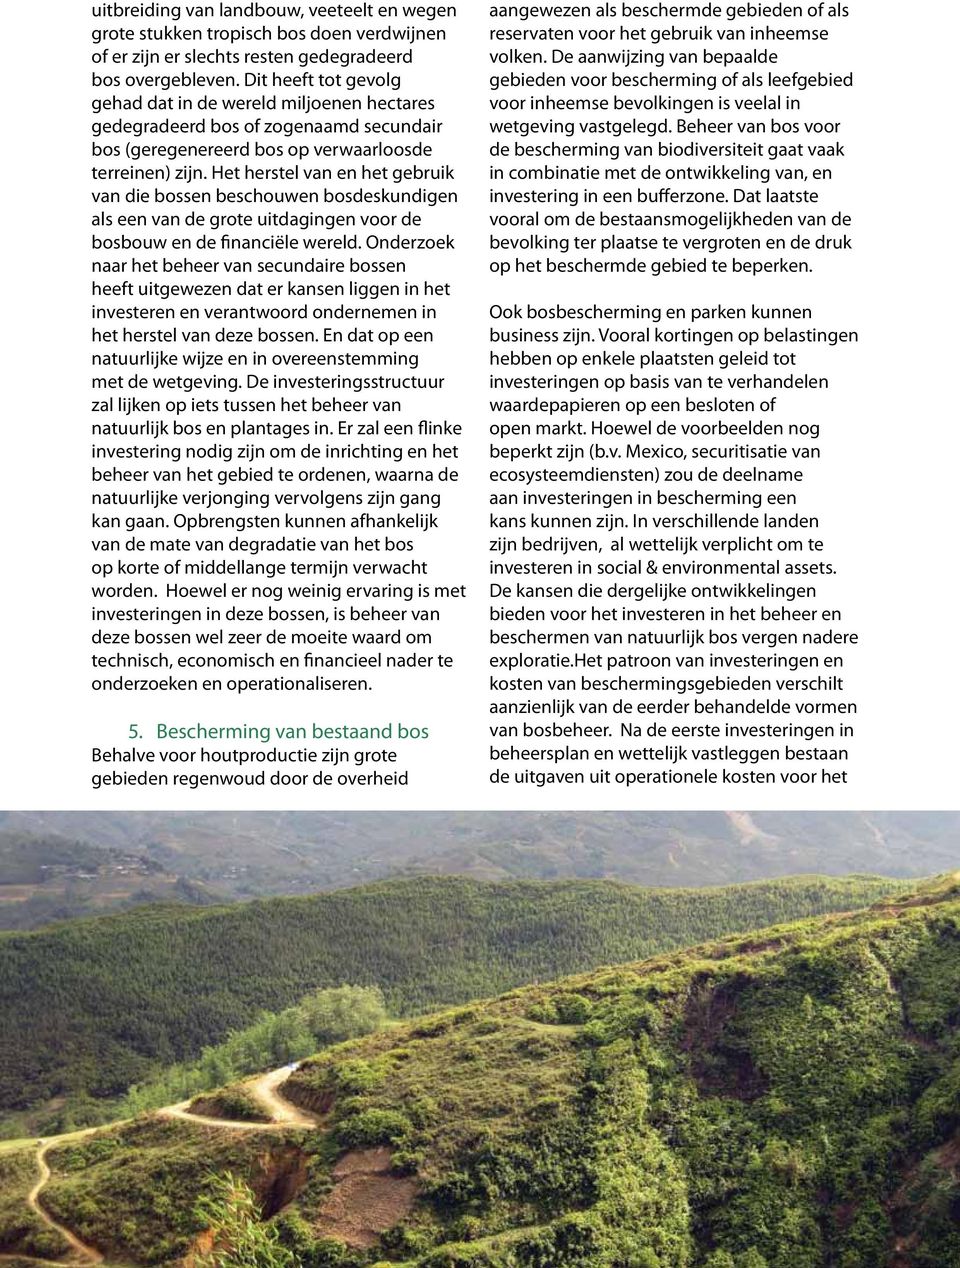 Het herstel van en het gebruik van die bossen beschouwen bosdeskundigen als een van de grote uitdagingen voor de bosbouw en de financiële wereld.